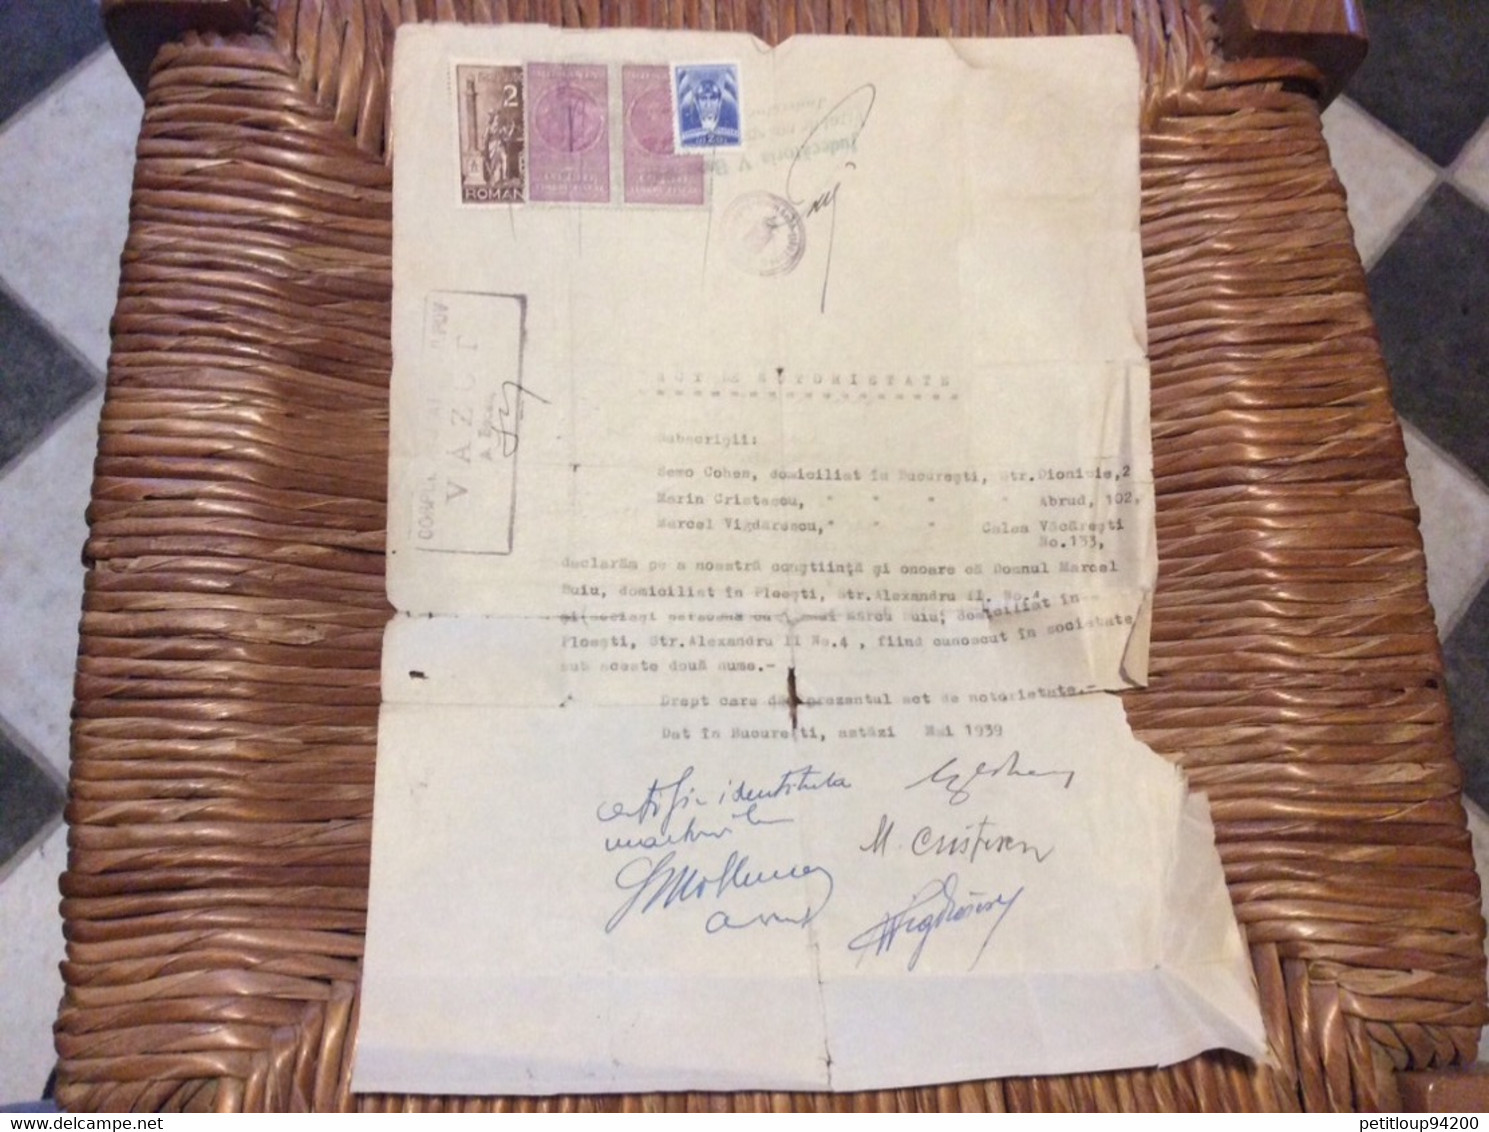 (5) ROUMANIE *4 TIMBRES FISCAL JUDICIAIRE AVIATION SUR DOCUMENT  Acte De Notoriété 7 LEI  2 LEI  Revenue Stamps 1939 - Fiscale Zegels